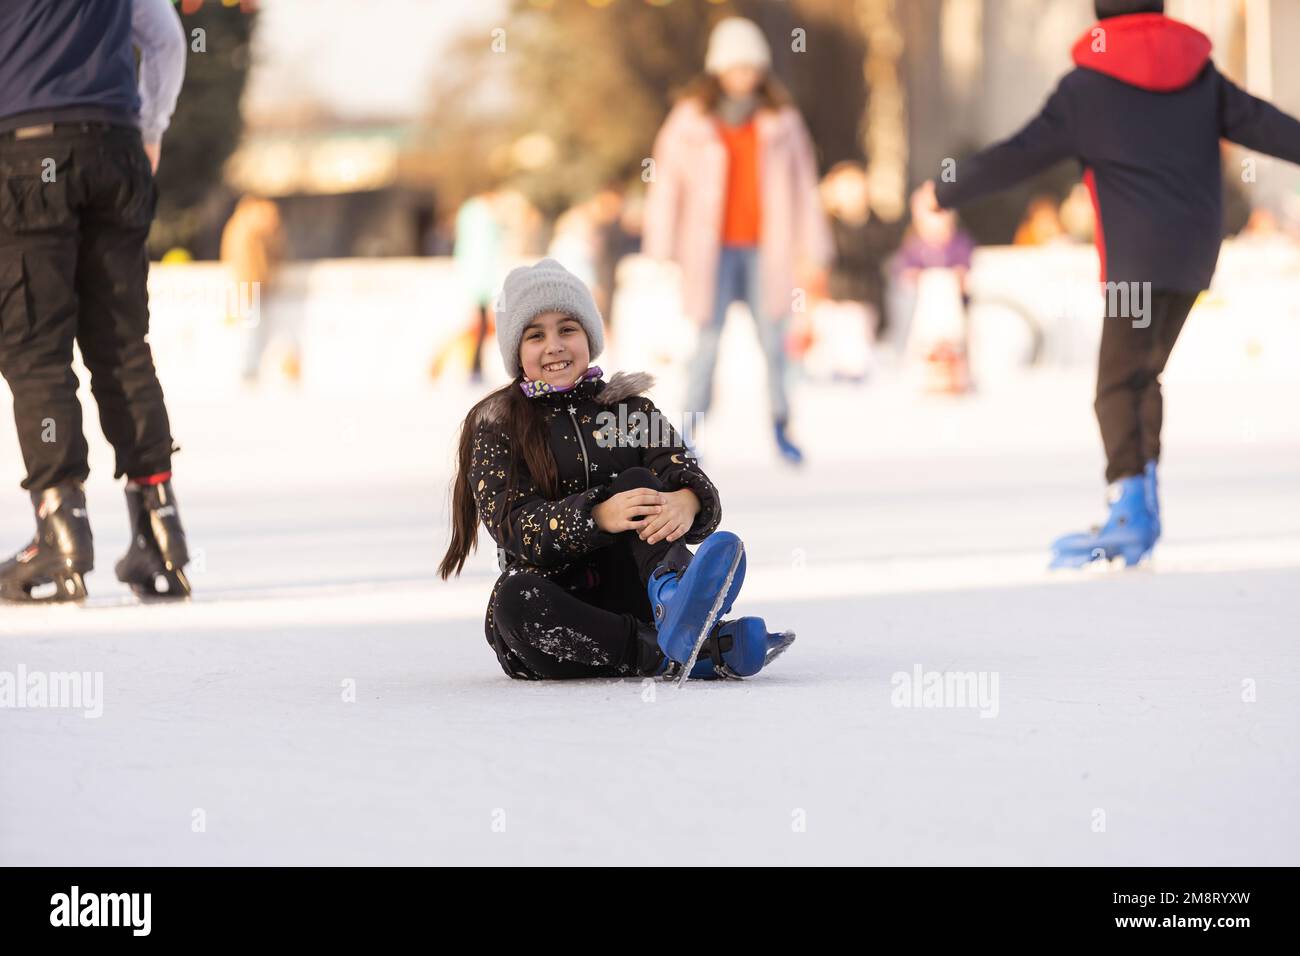 Une fille est tombée à la patinoire en hiver. la fille s'assoit sur la glace en patins, après une chute. Banque D'Images